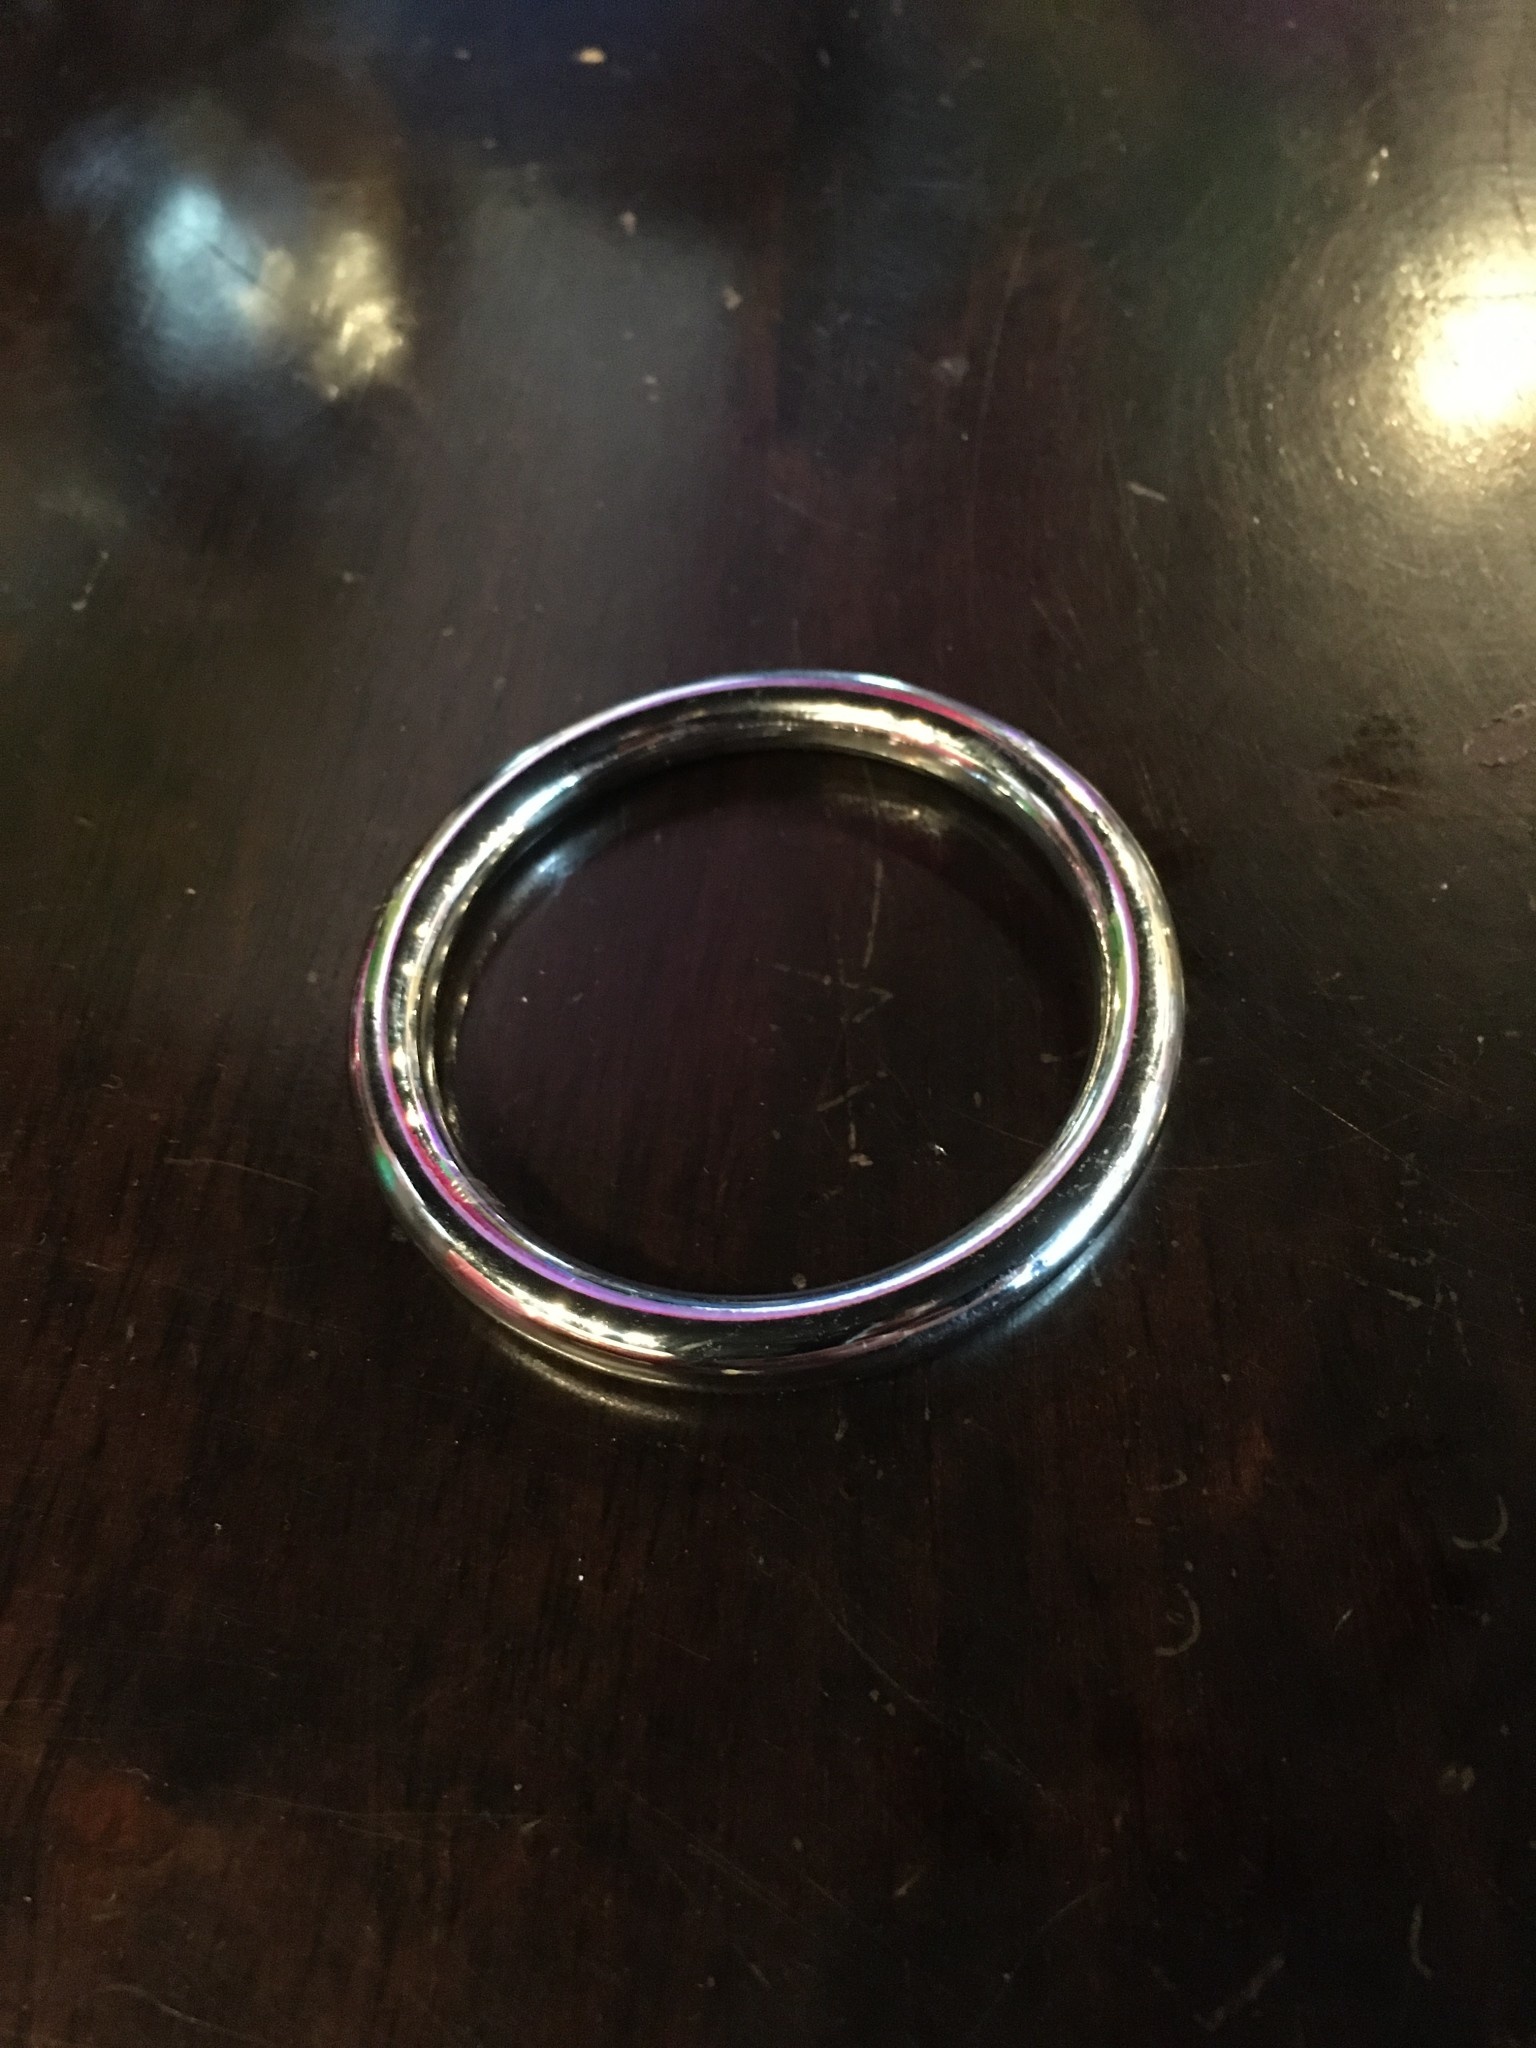 Seamless Metal Ring 1.75